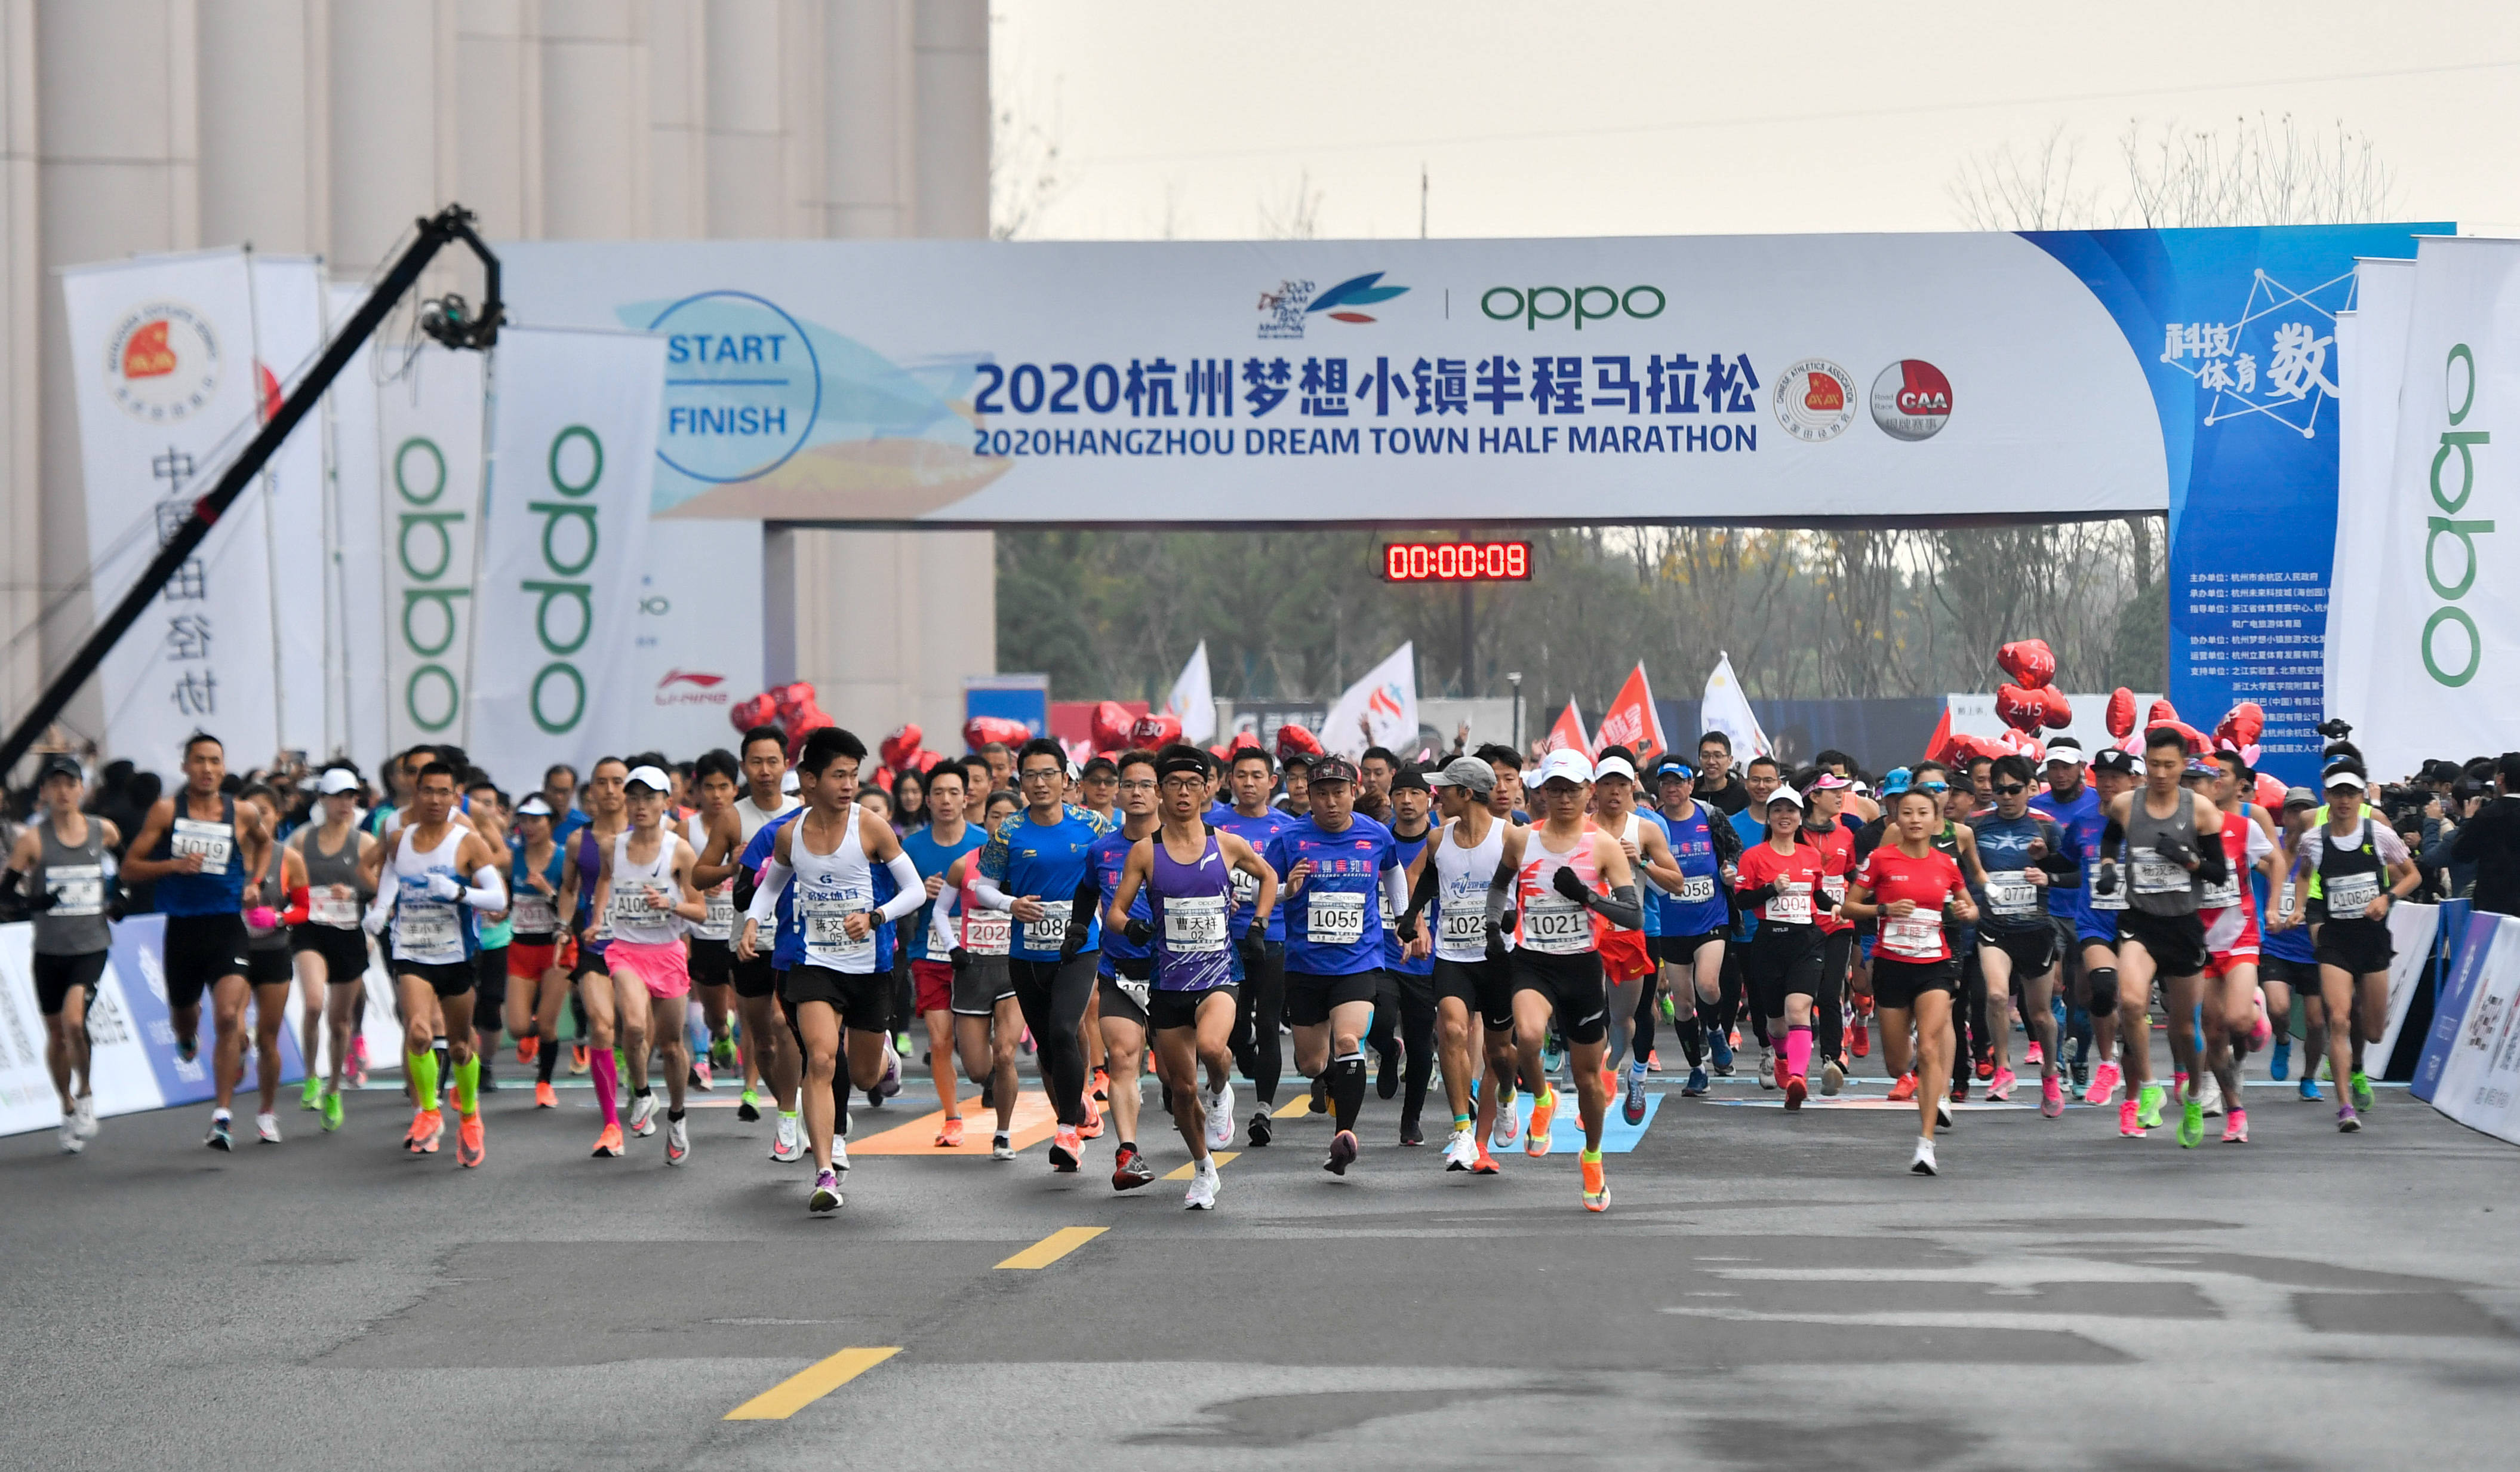 马拉松——2020杭州梦想小镇半程马拉松鸣枪开跑